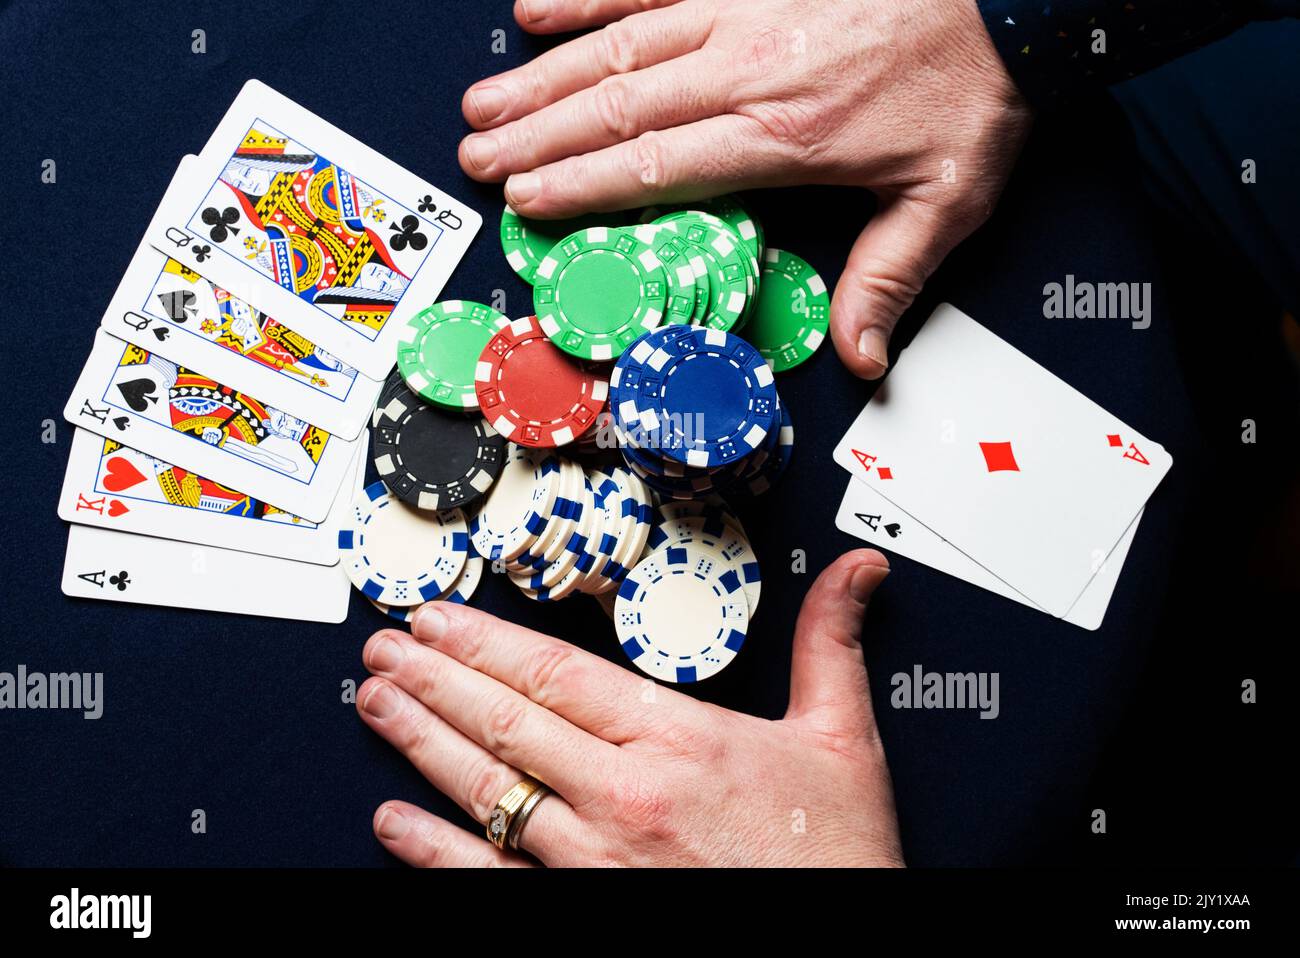 Un homme tenant une paire d'as gagne une main de poker Texas Hold'em. Banque D'Images